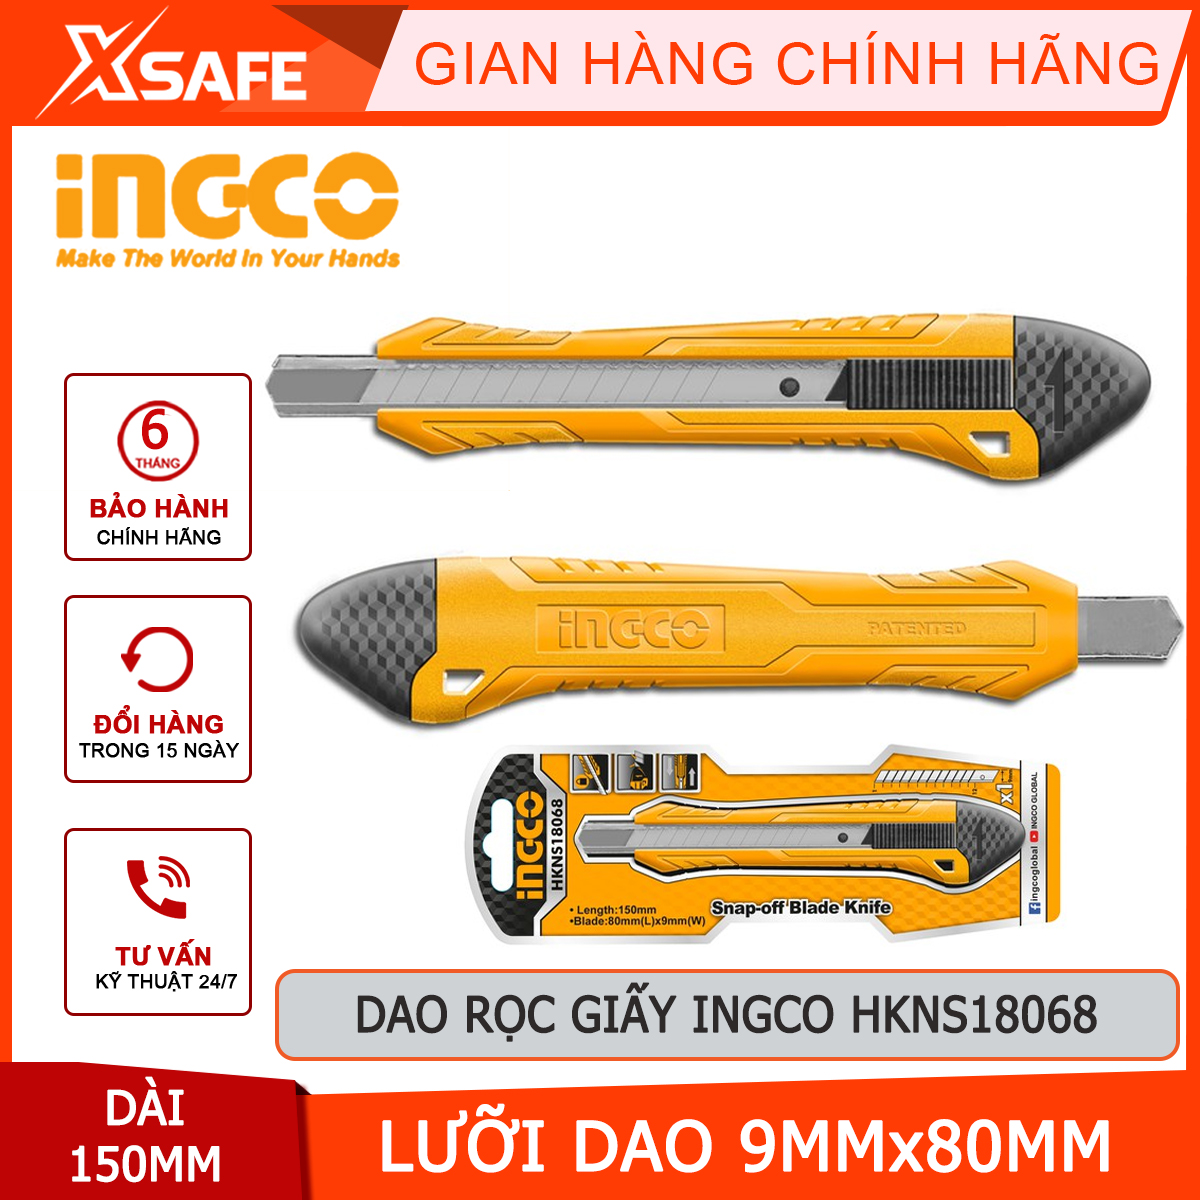 Dao rọc giấy INGCO HKNS18068 dao cắt giấy có chiều dài 150mm, kích thước lưỡi 9mmx80mm sắc bén, nhỏ gọn, độ bền cao và an toàn khi sử dụng